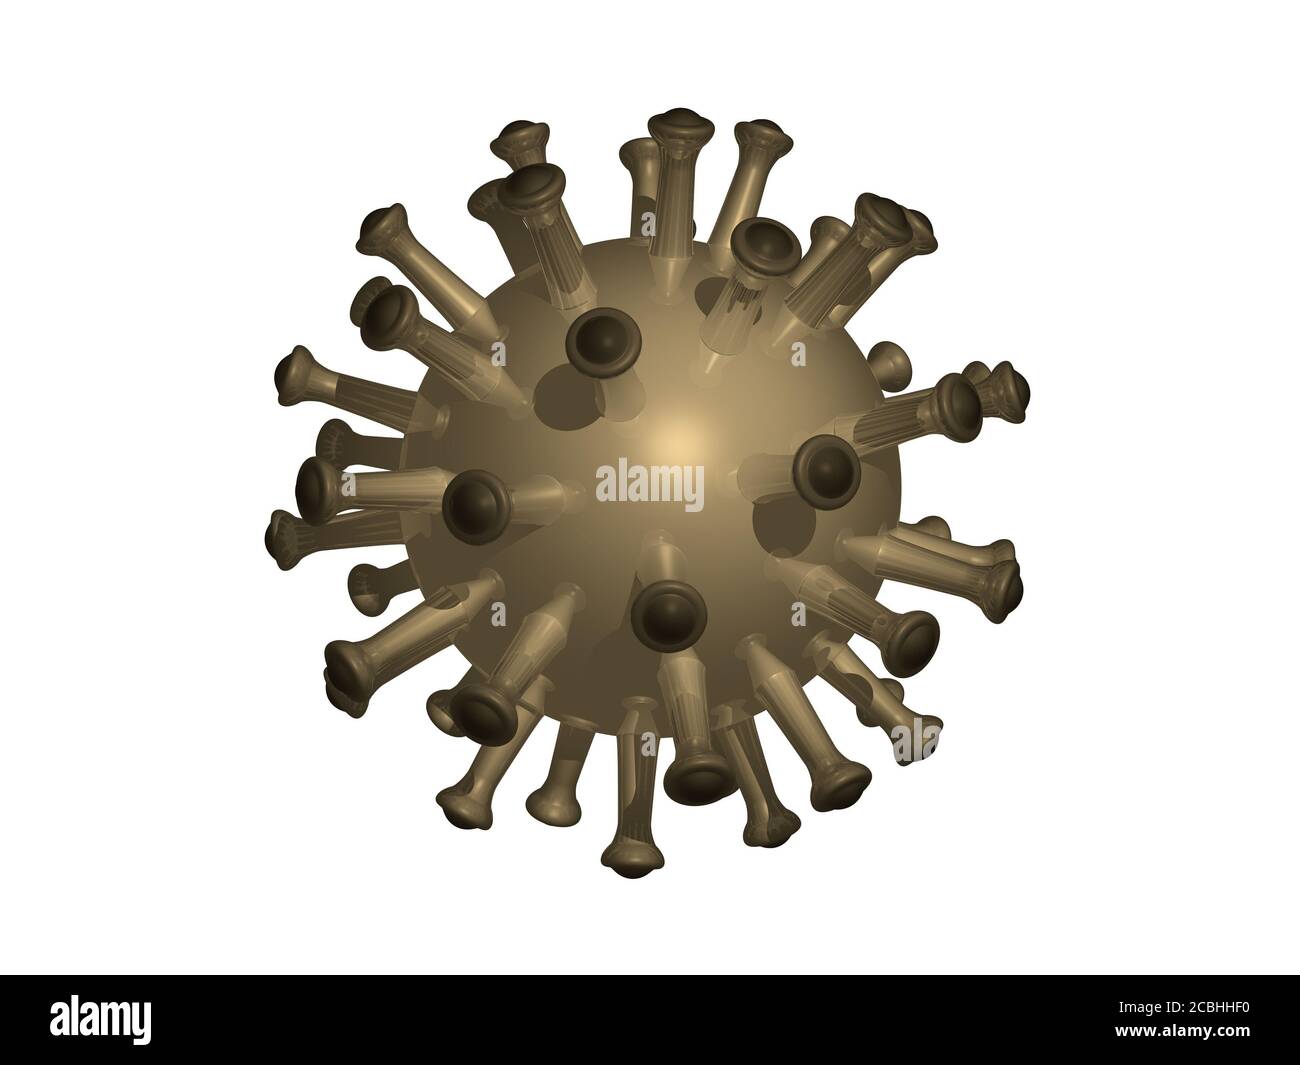 Messing CORONA Virus Illustration mit klebrigen Armen um den Körper Mit einer einheitlichen Textur durch 3D-Rendering Stockfoto